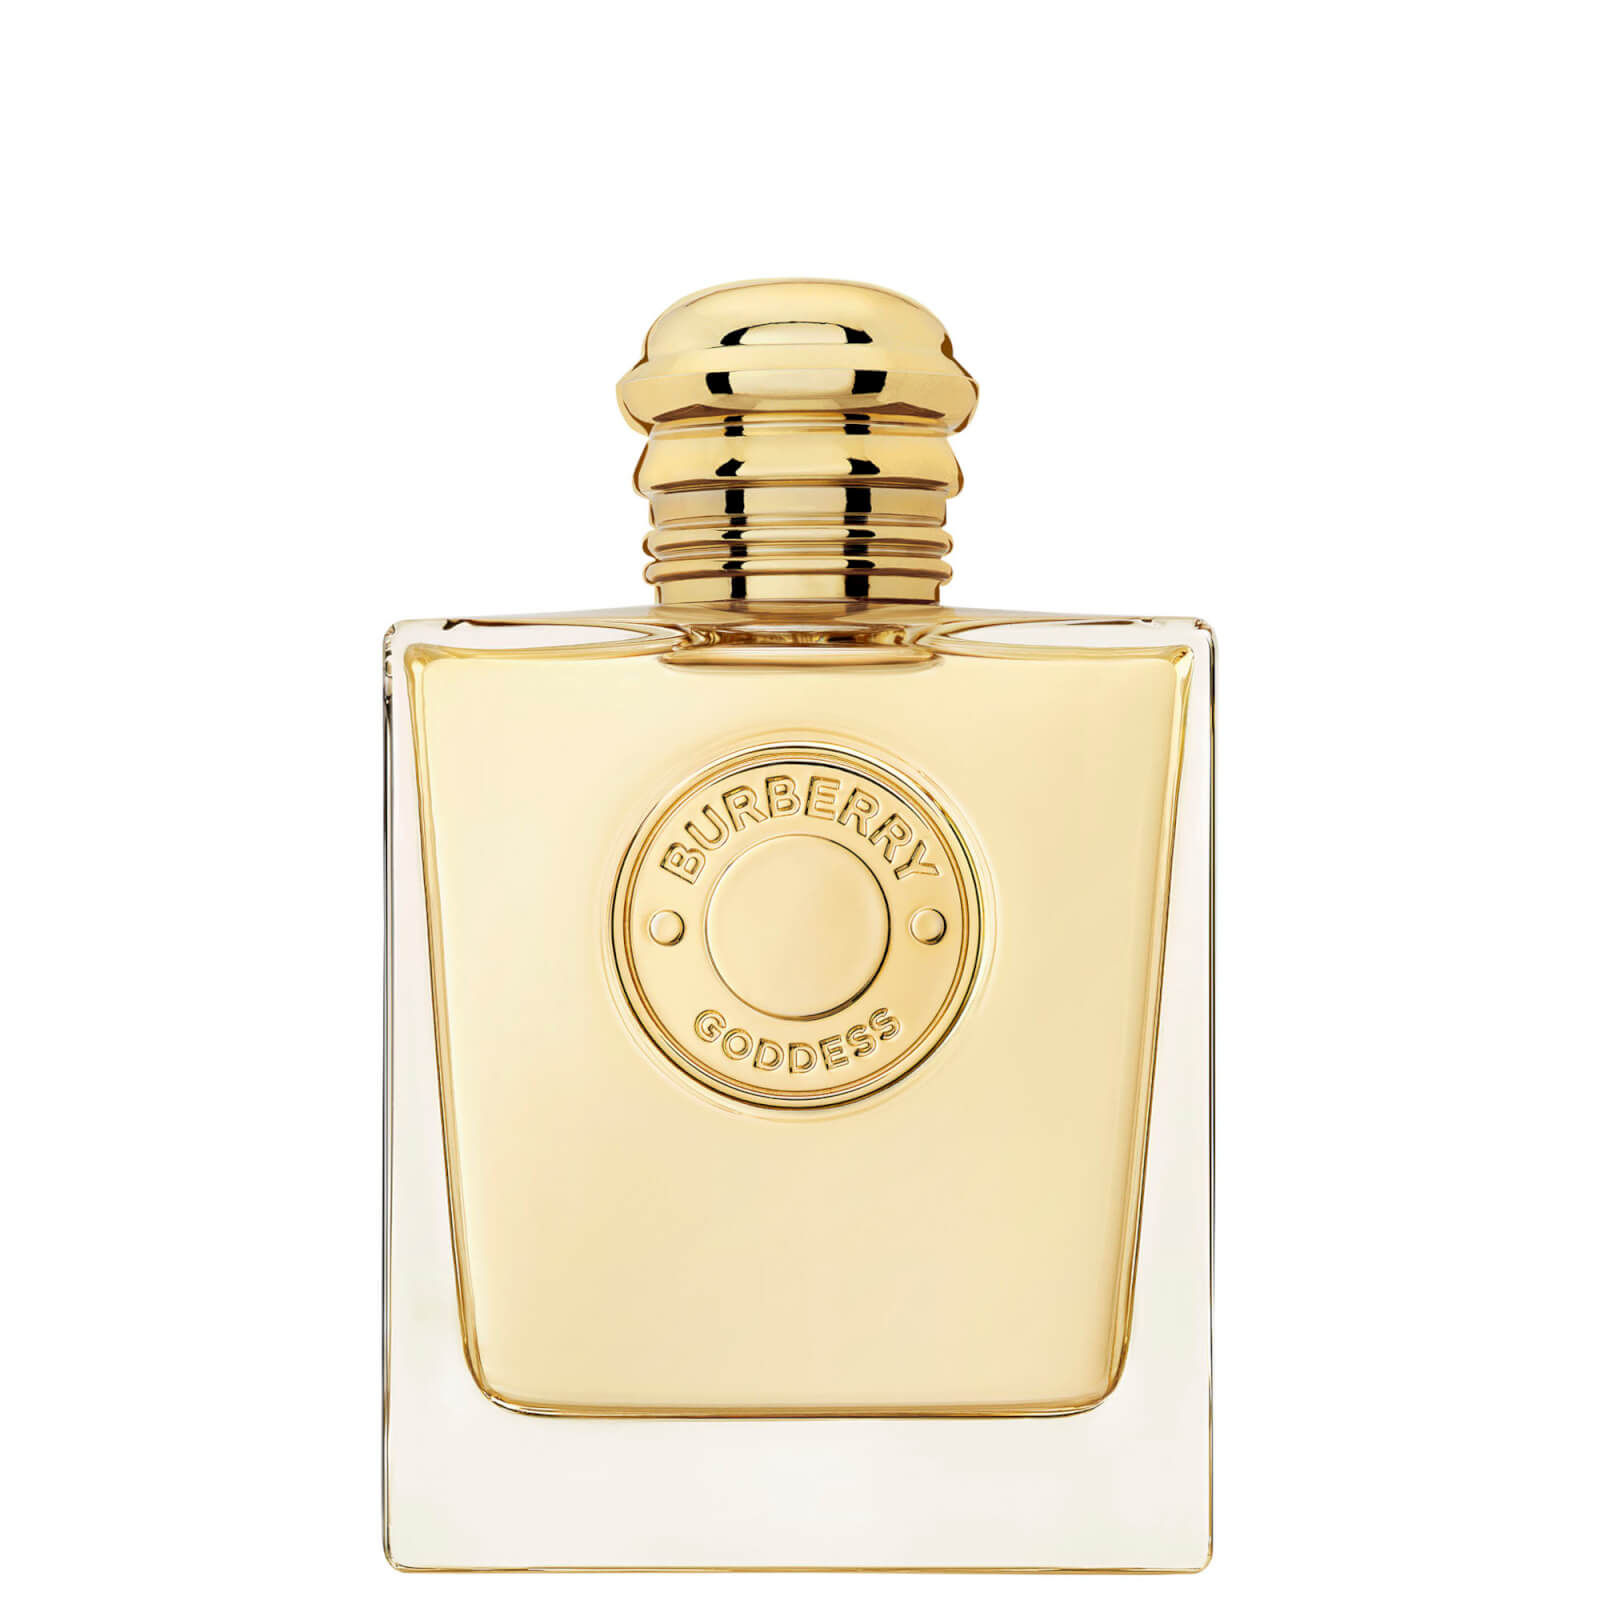 Photos - Women's Fragrance Burberry Goddess Eau de Parfum for Women 100ml 99350093273 